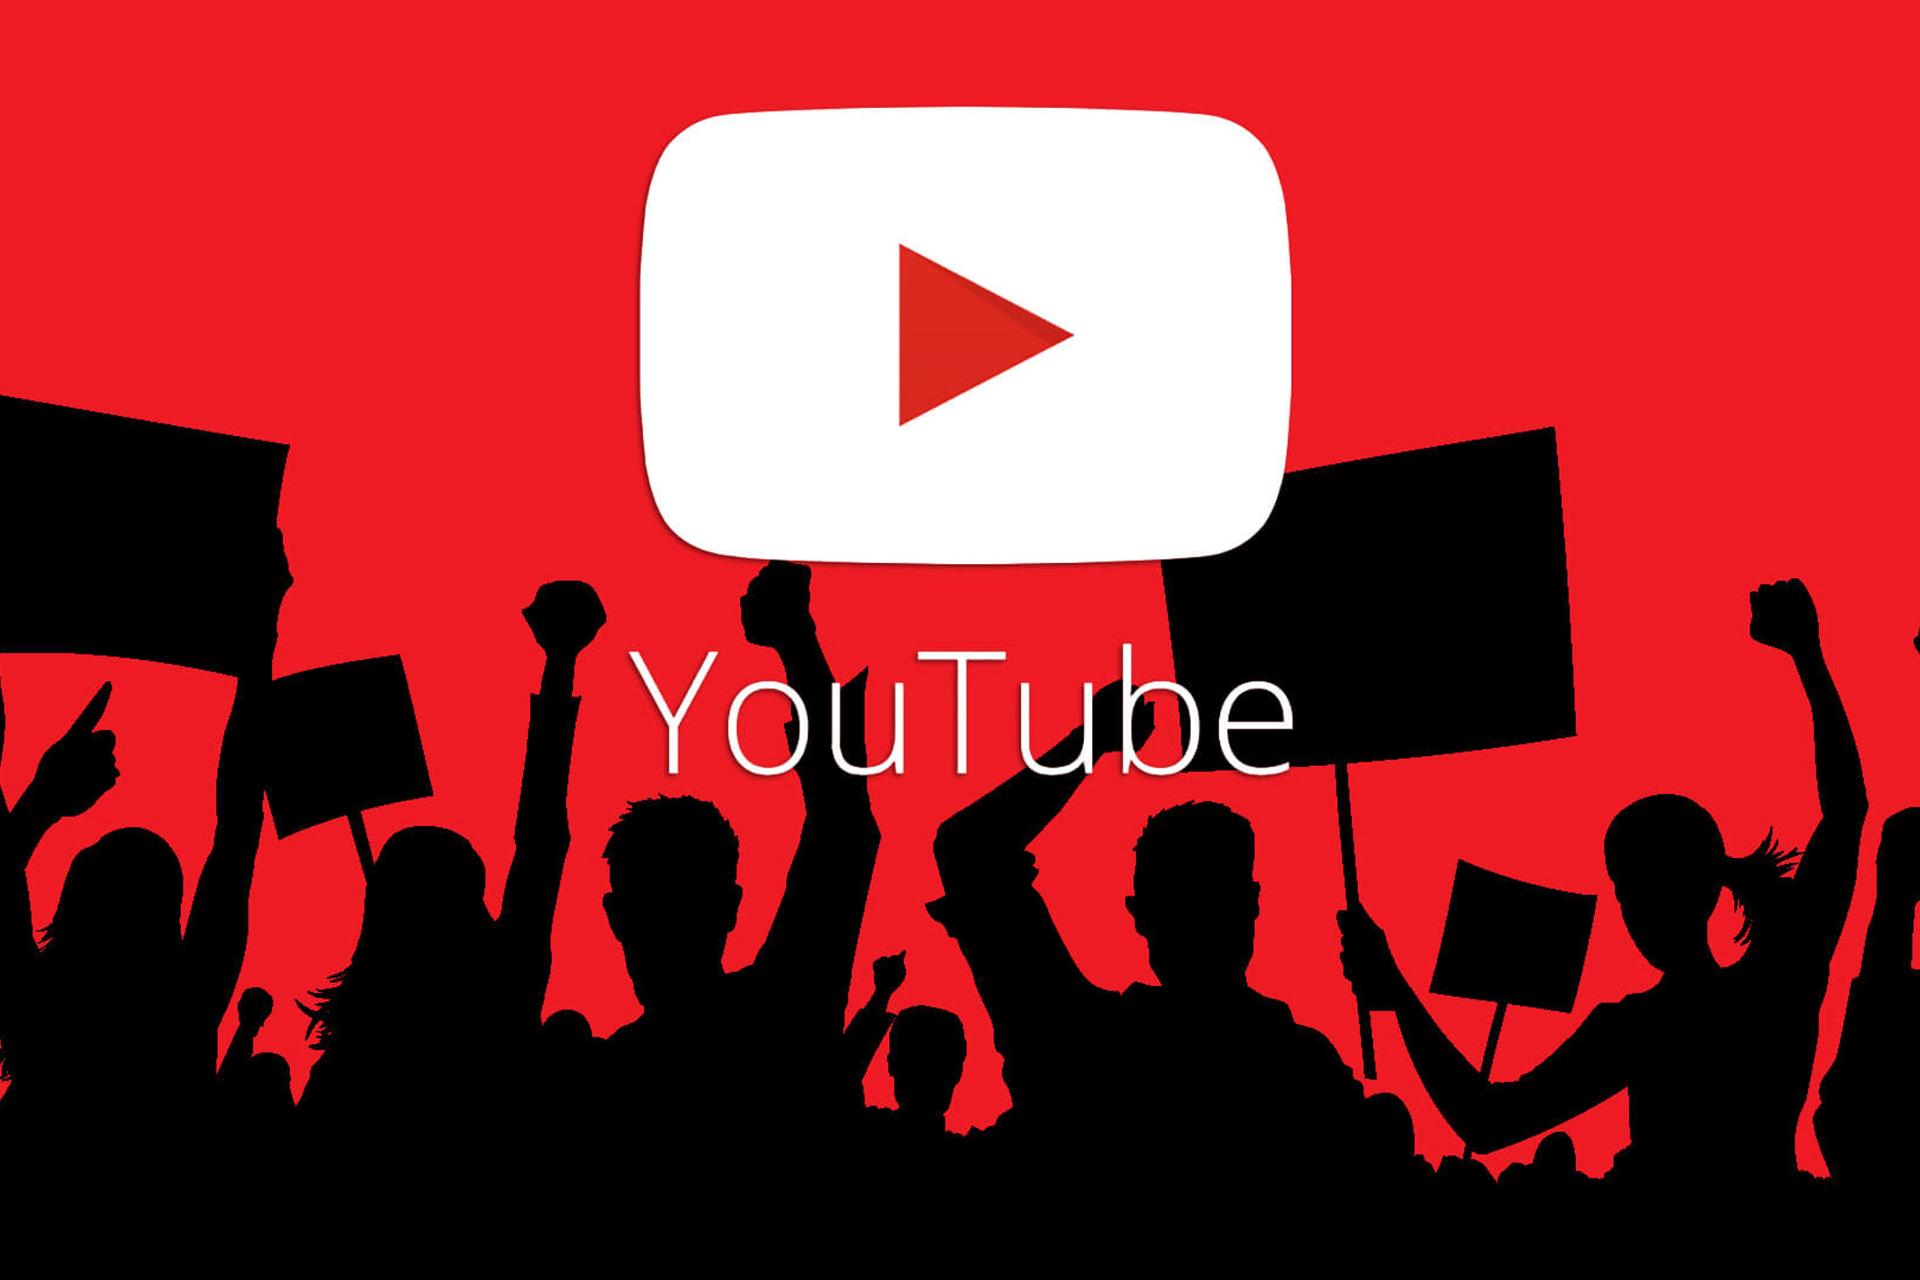 مرجع متخصصين ايران لوگو سفيد يوتيوب / YouTube در پس زمينه قرمز مردم به رنگ مشكي